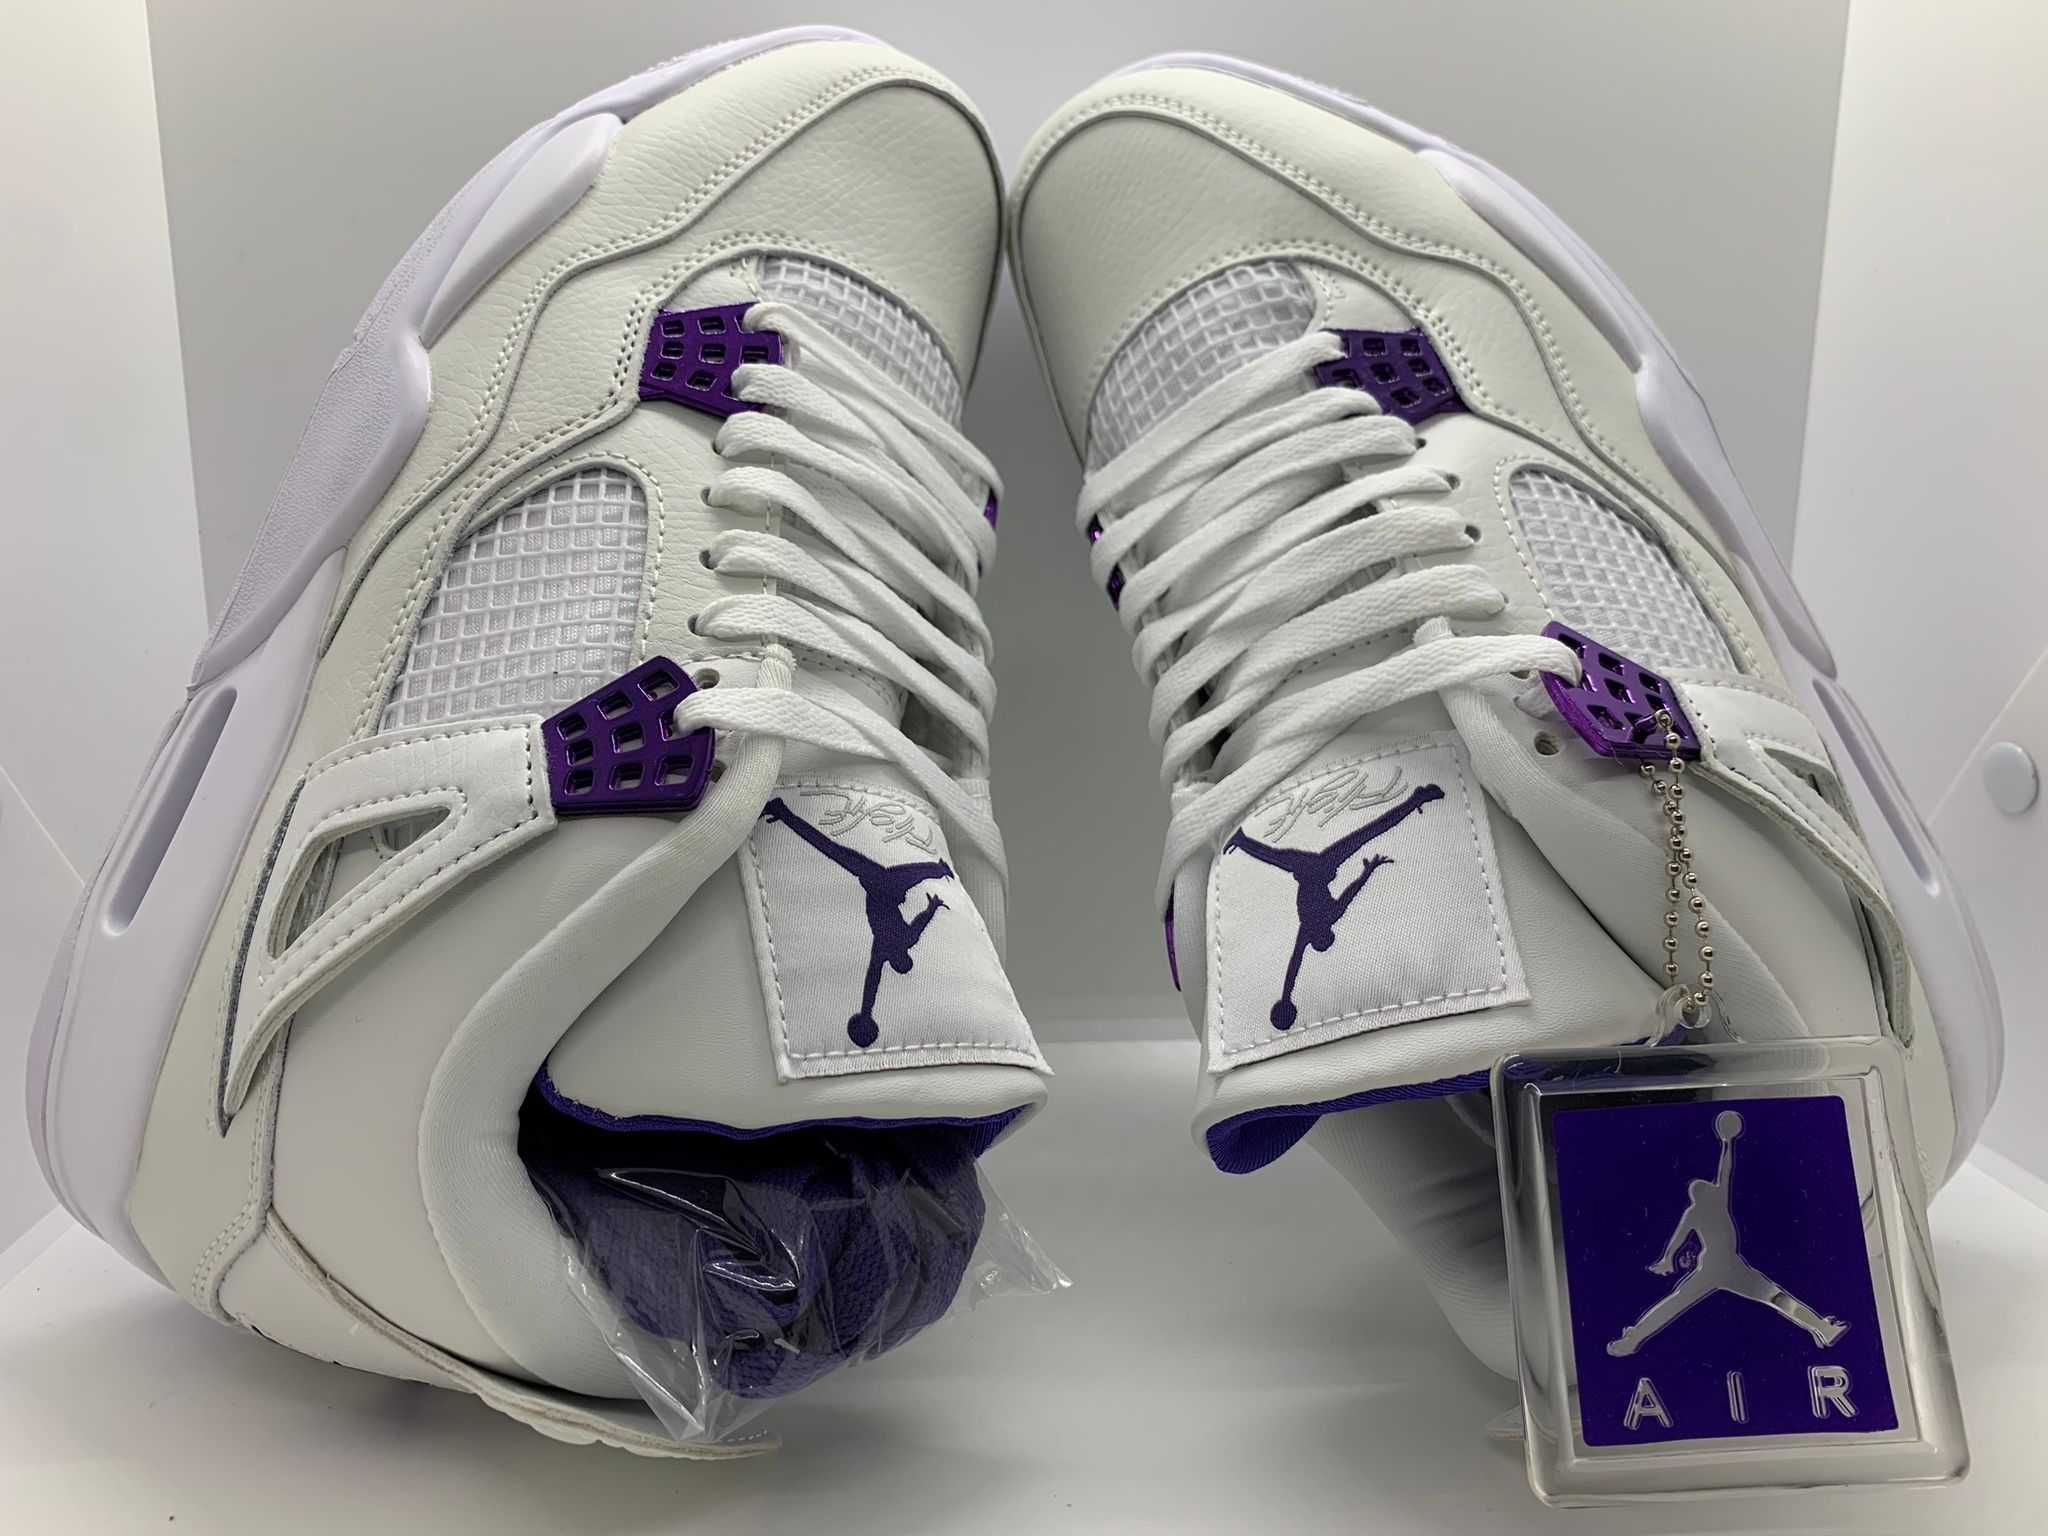 Jordan 4 Retro "Metallic Pack - Purple" sneakers